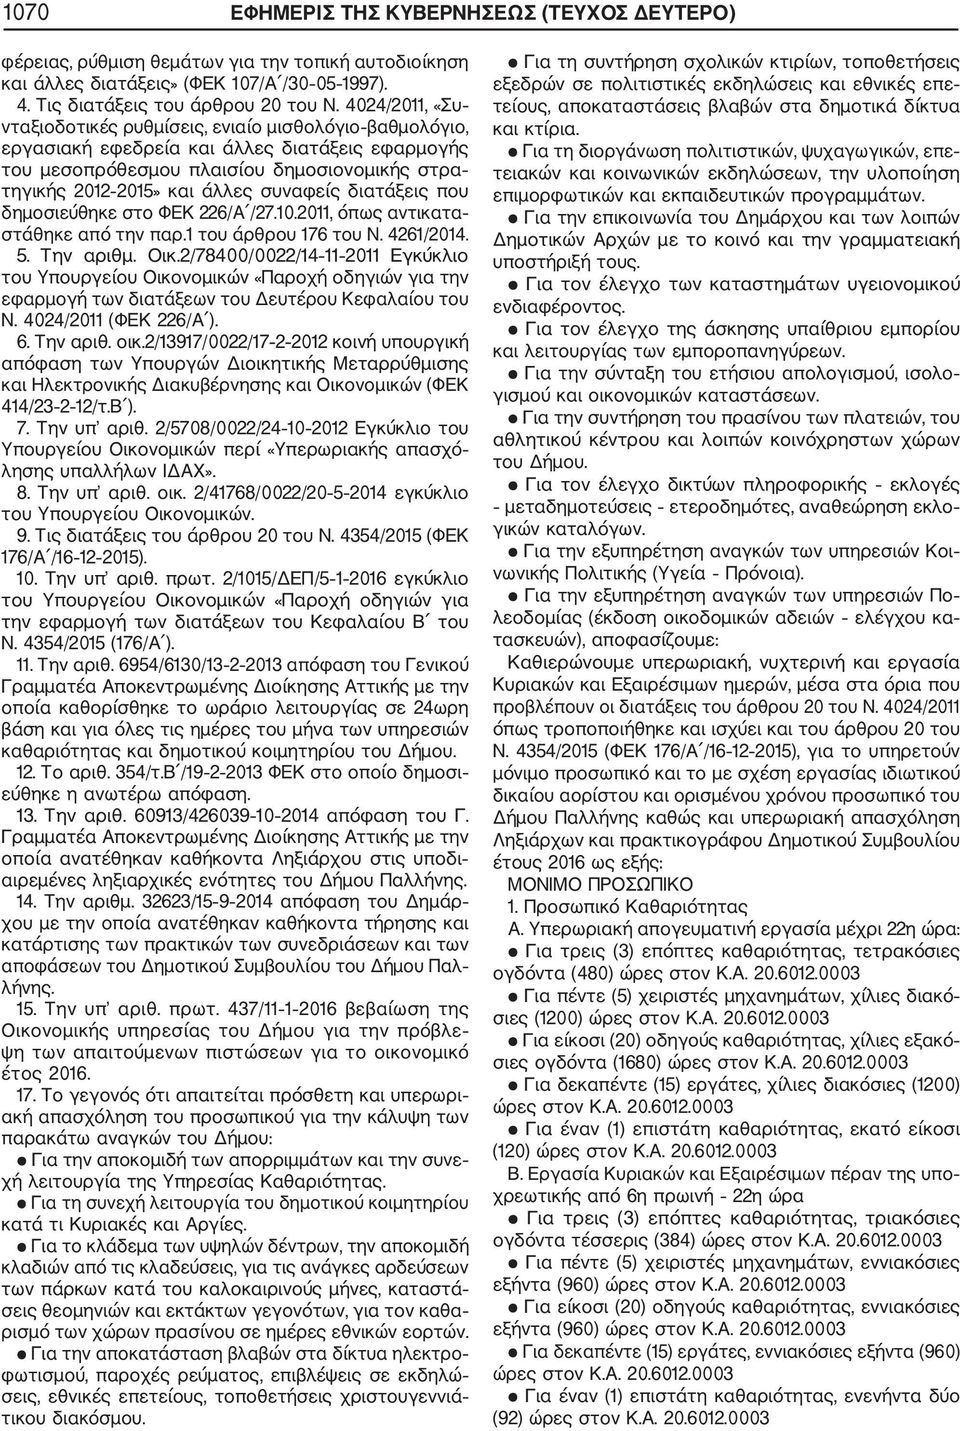 συναφείς διατάξεις που δημοσιεύθηκε στο ΦΕΚ 226/Α /27.10.2011, όπως αντικατα στάθηκε από την παρ.1 του άρθρου 176 του Ν. 4261/2014. 5. Την αριθμ. Οικ.